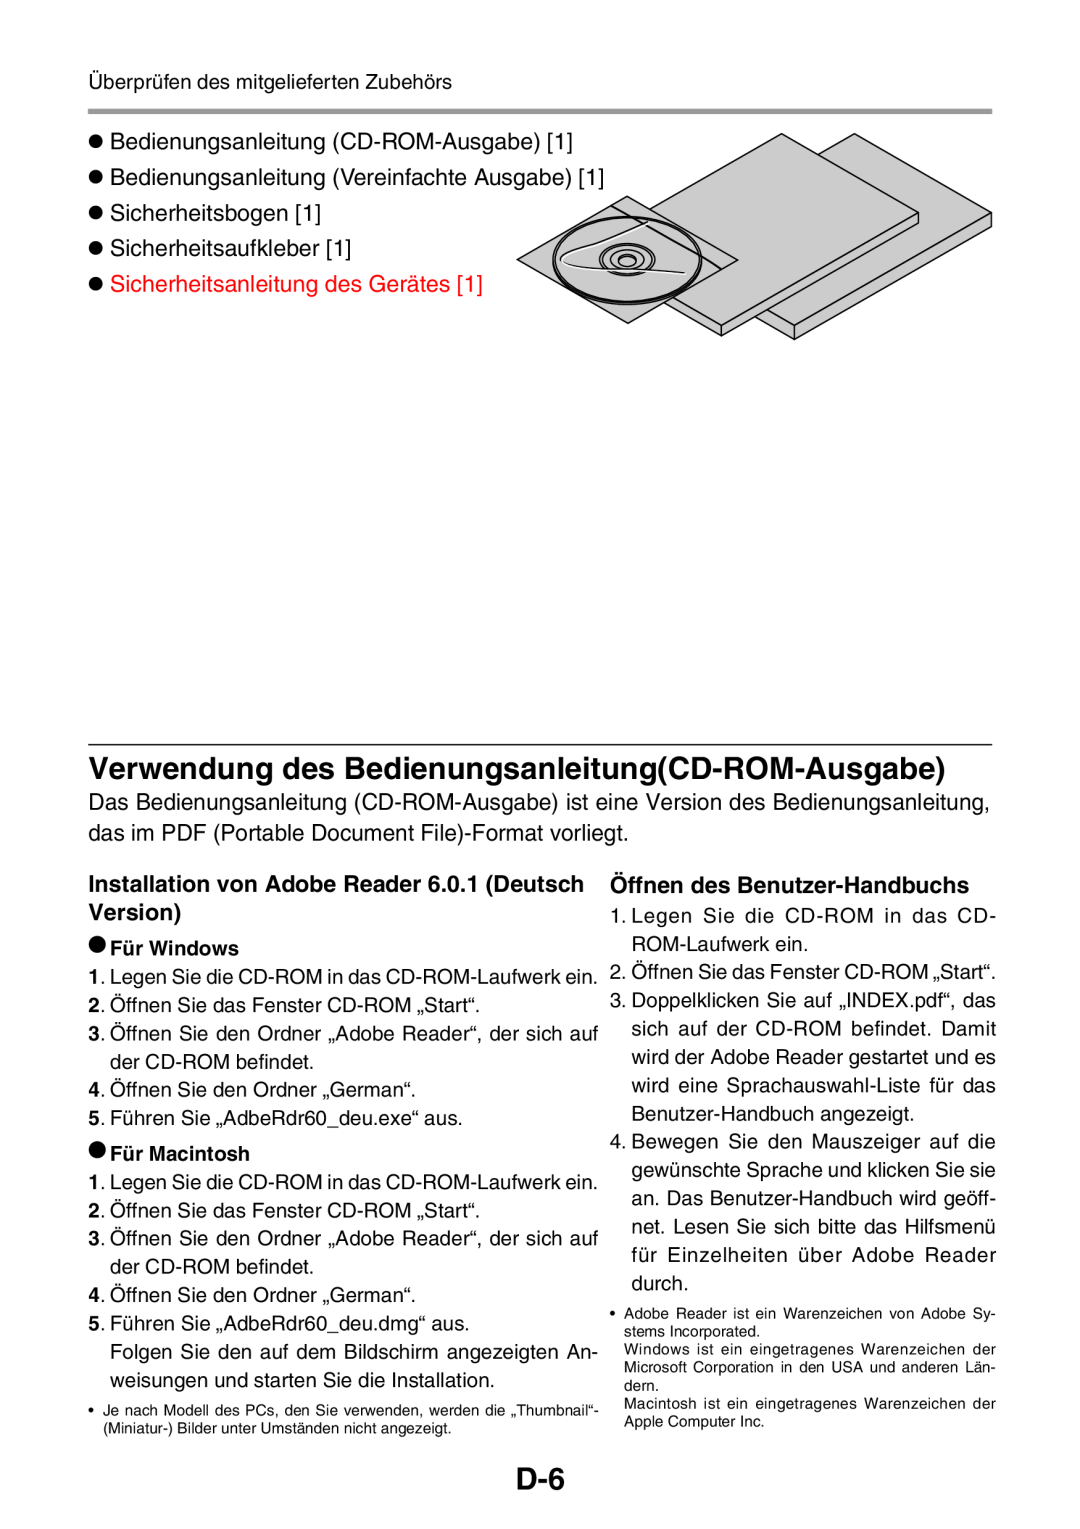 3M PX5 Verwendung des BedienungsanleitungCD-ROM-Ausgabe, Bedienungsanleitung CD-ROM-Ausgabe, Sicherheitsaufkleber, Version 